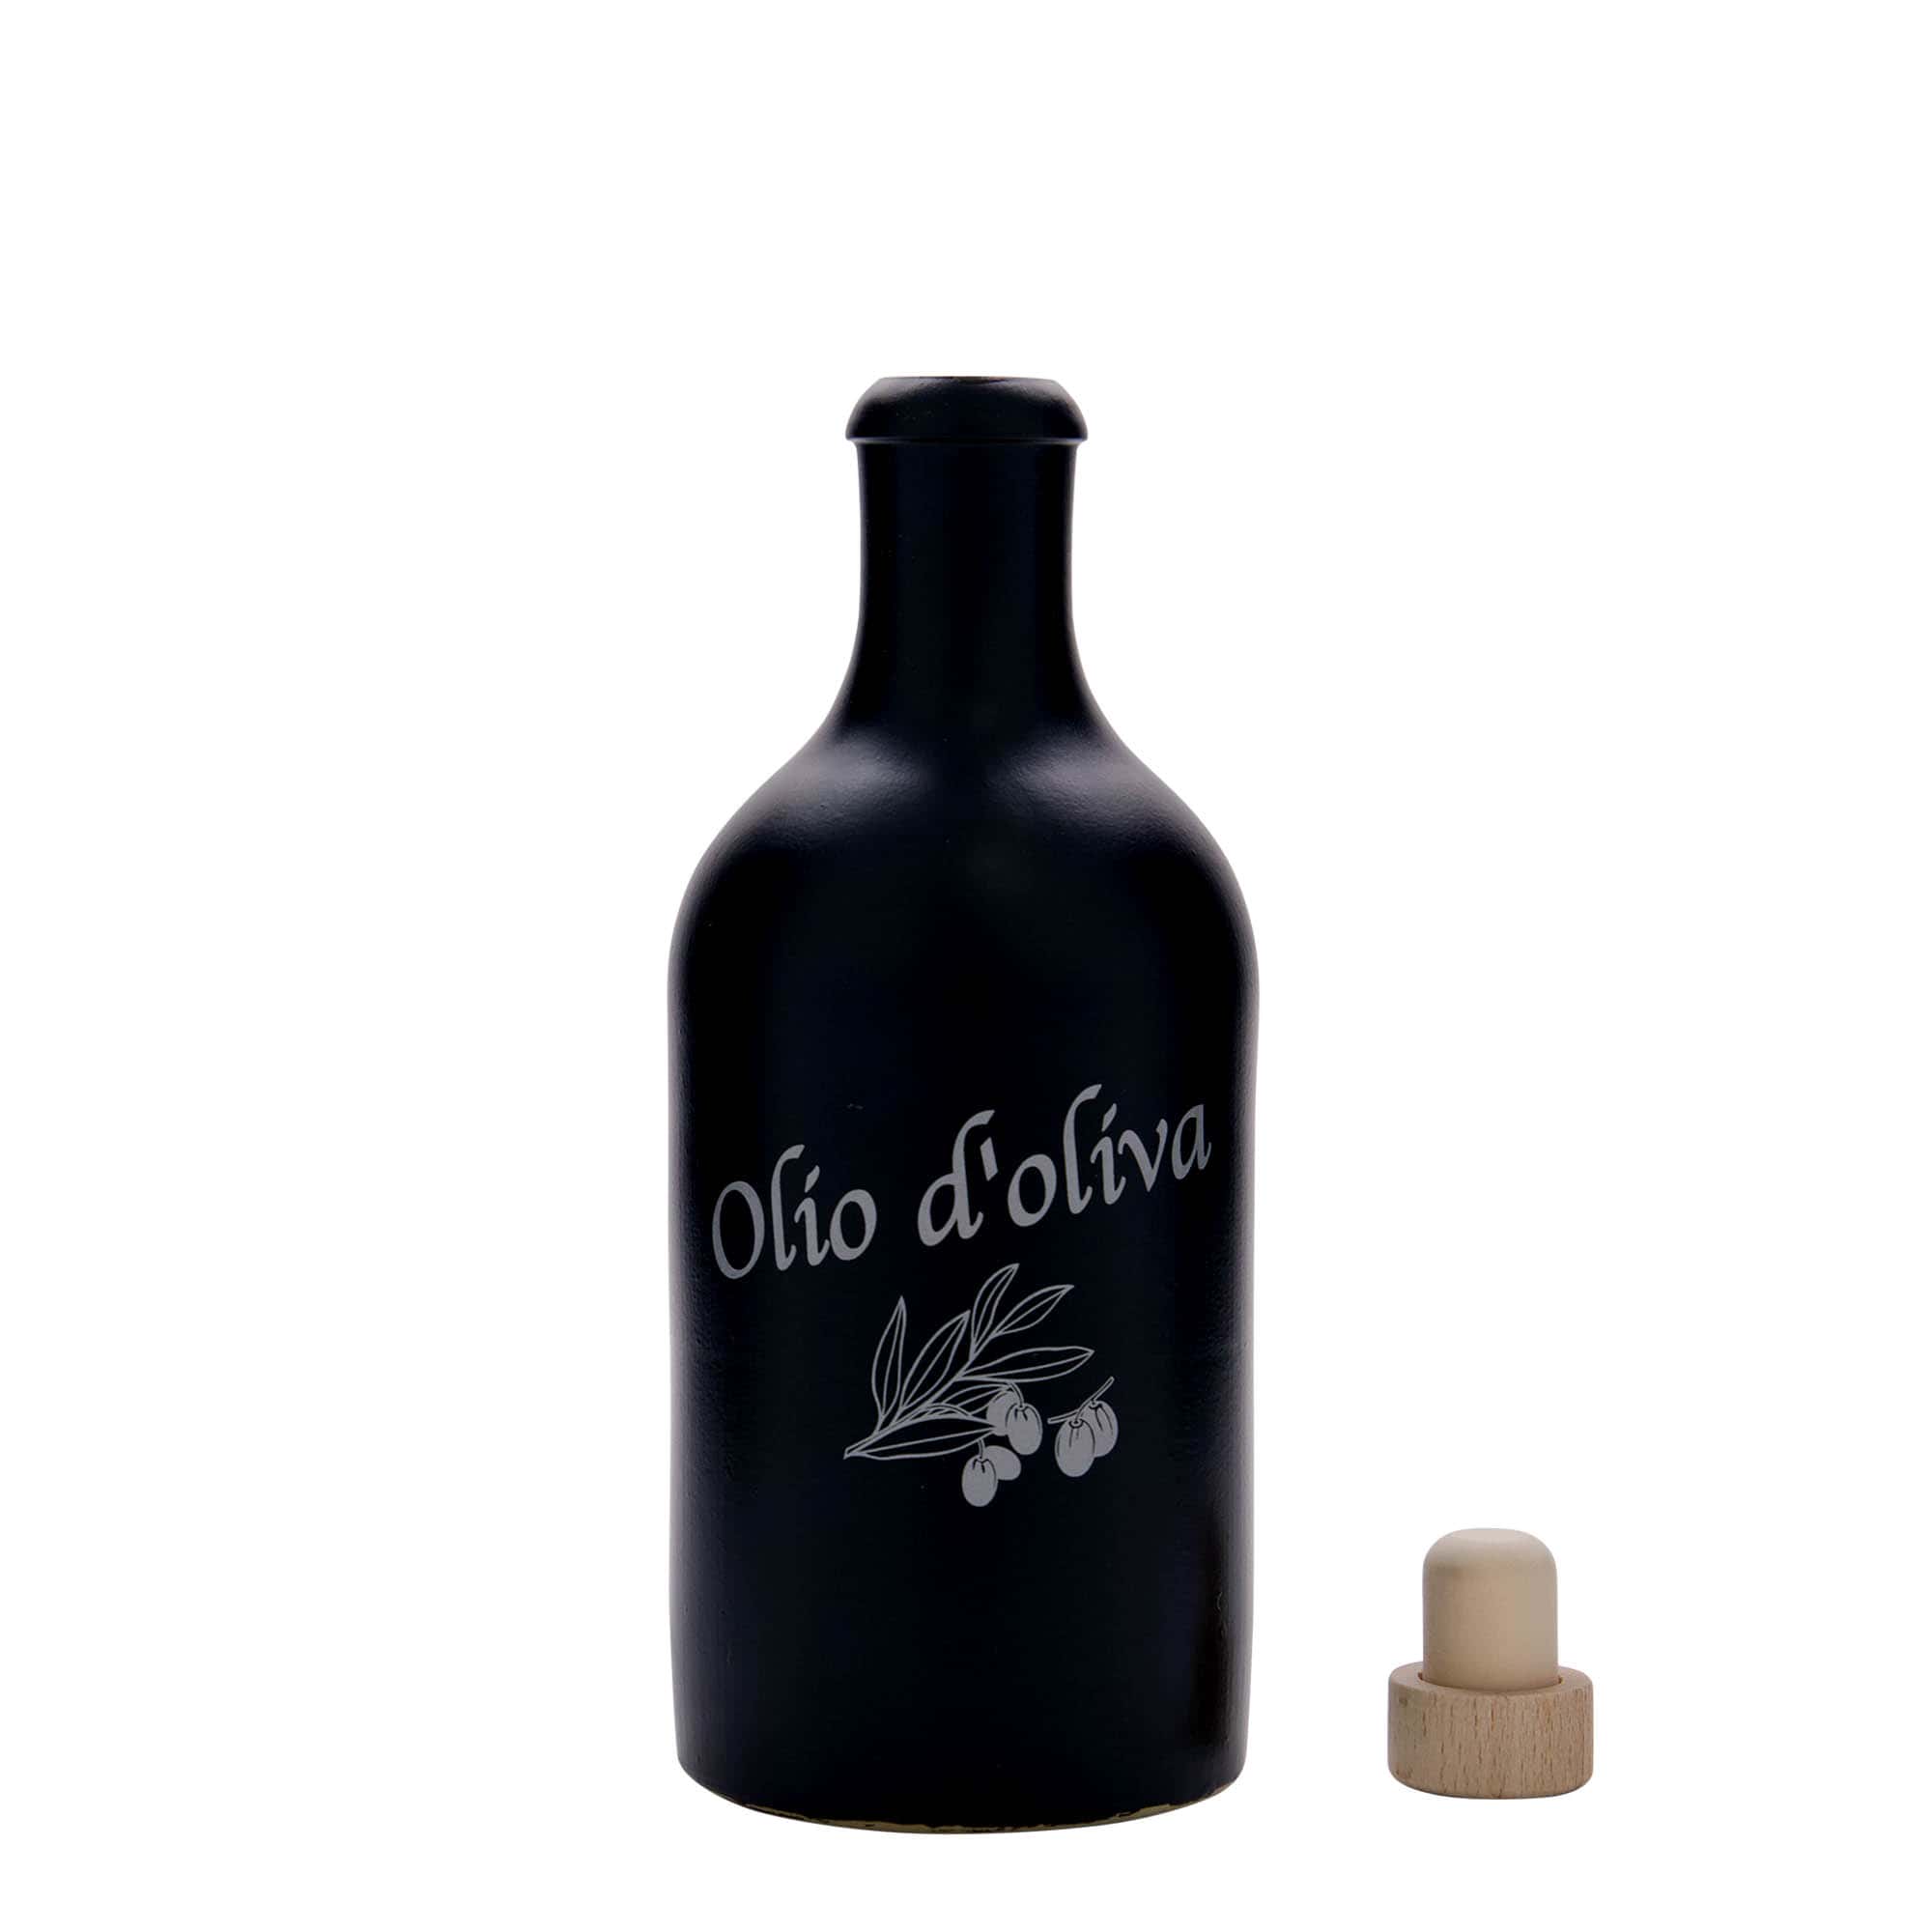 500 ml gliniany dzbanek, wzór: Olio d'Oliva, kamionka, kolor czarny, zamknięcie: korek